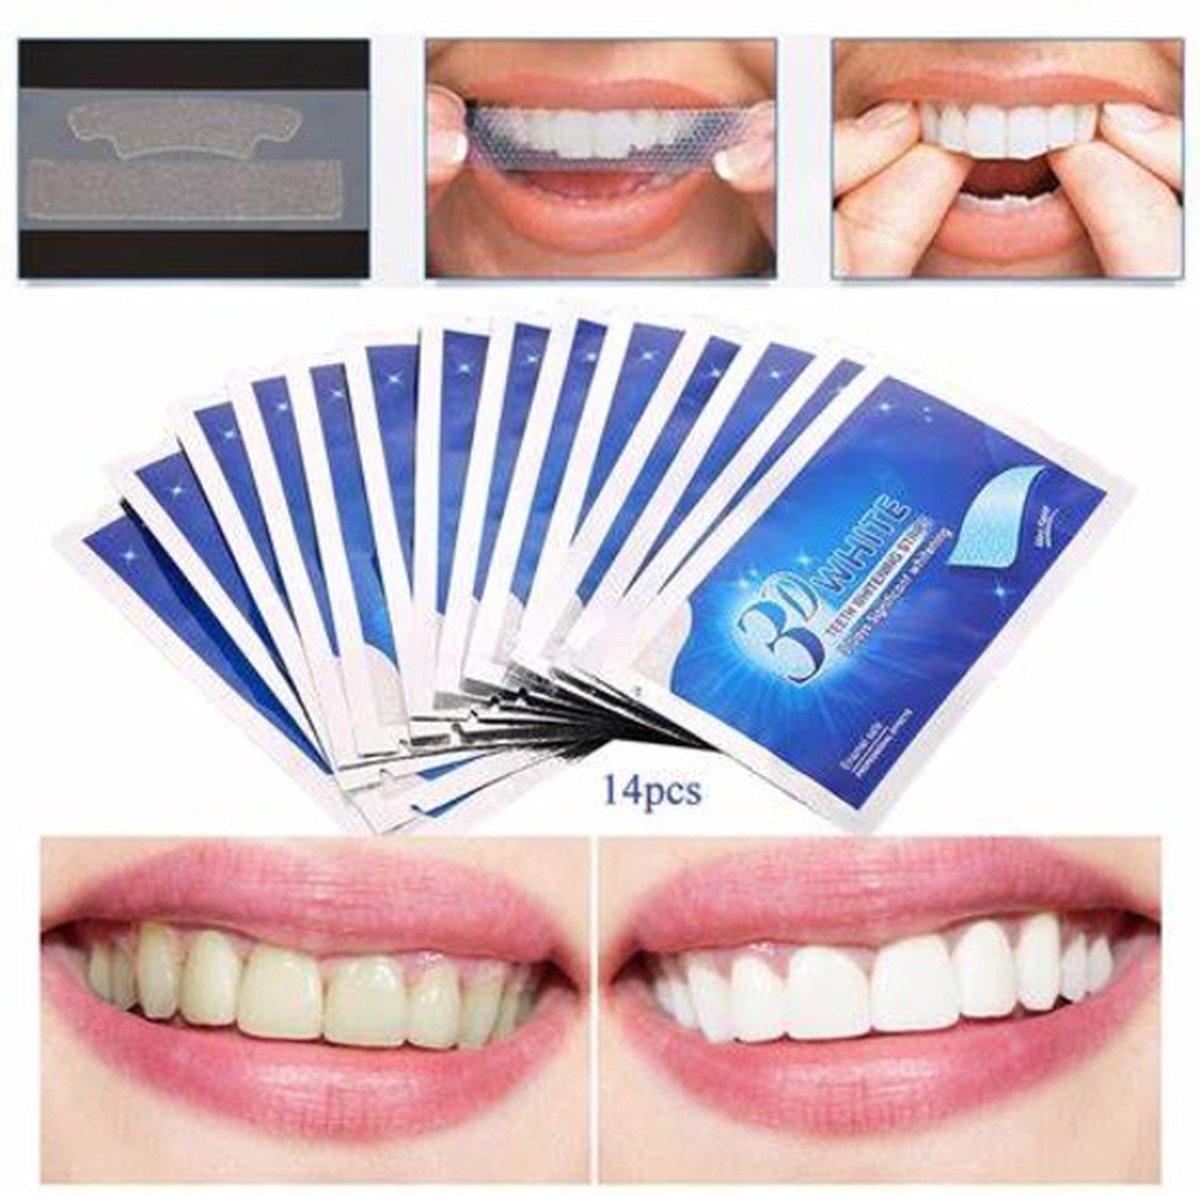 Tanden Bleken met 14 Sets Whitening Strips - Tandenbleekset met Bamboe Tandenborstel - Tanden Bleekstrips - Valentijn cadeautje voor haar vrouw